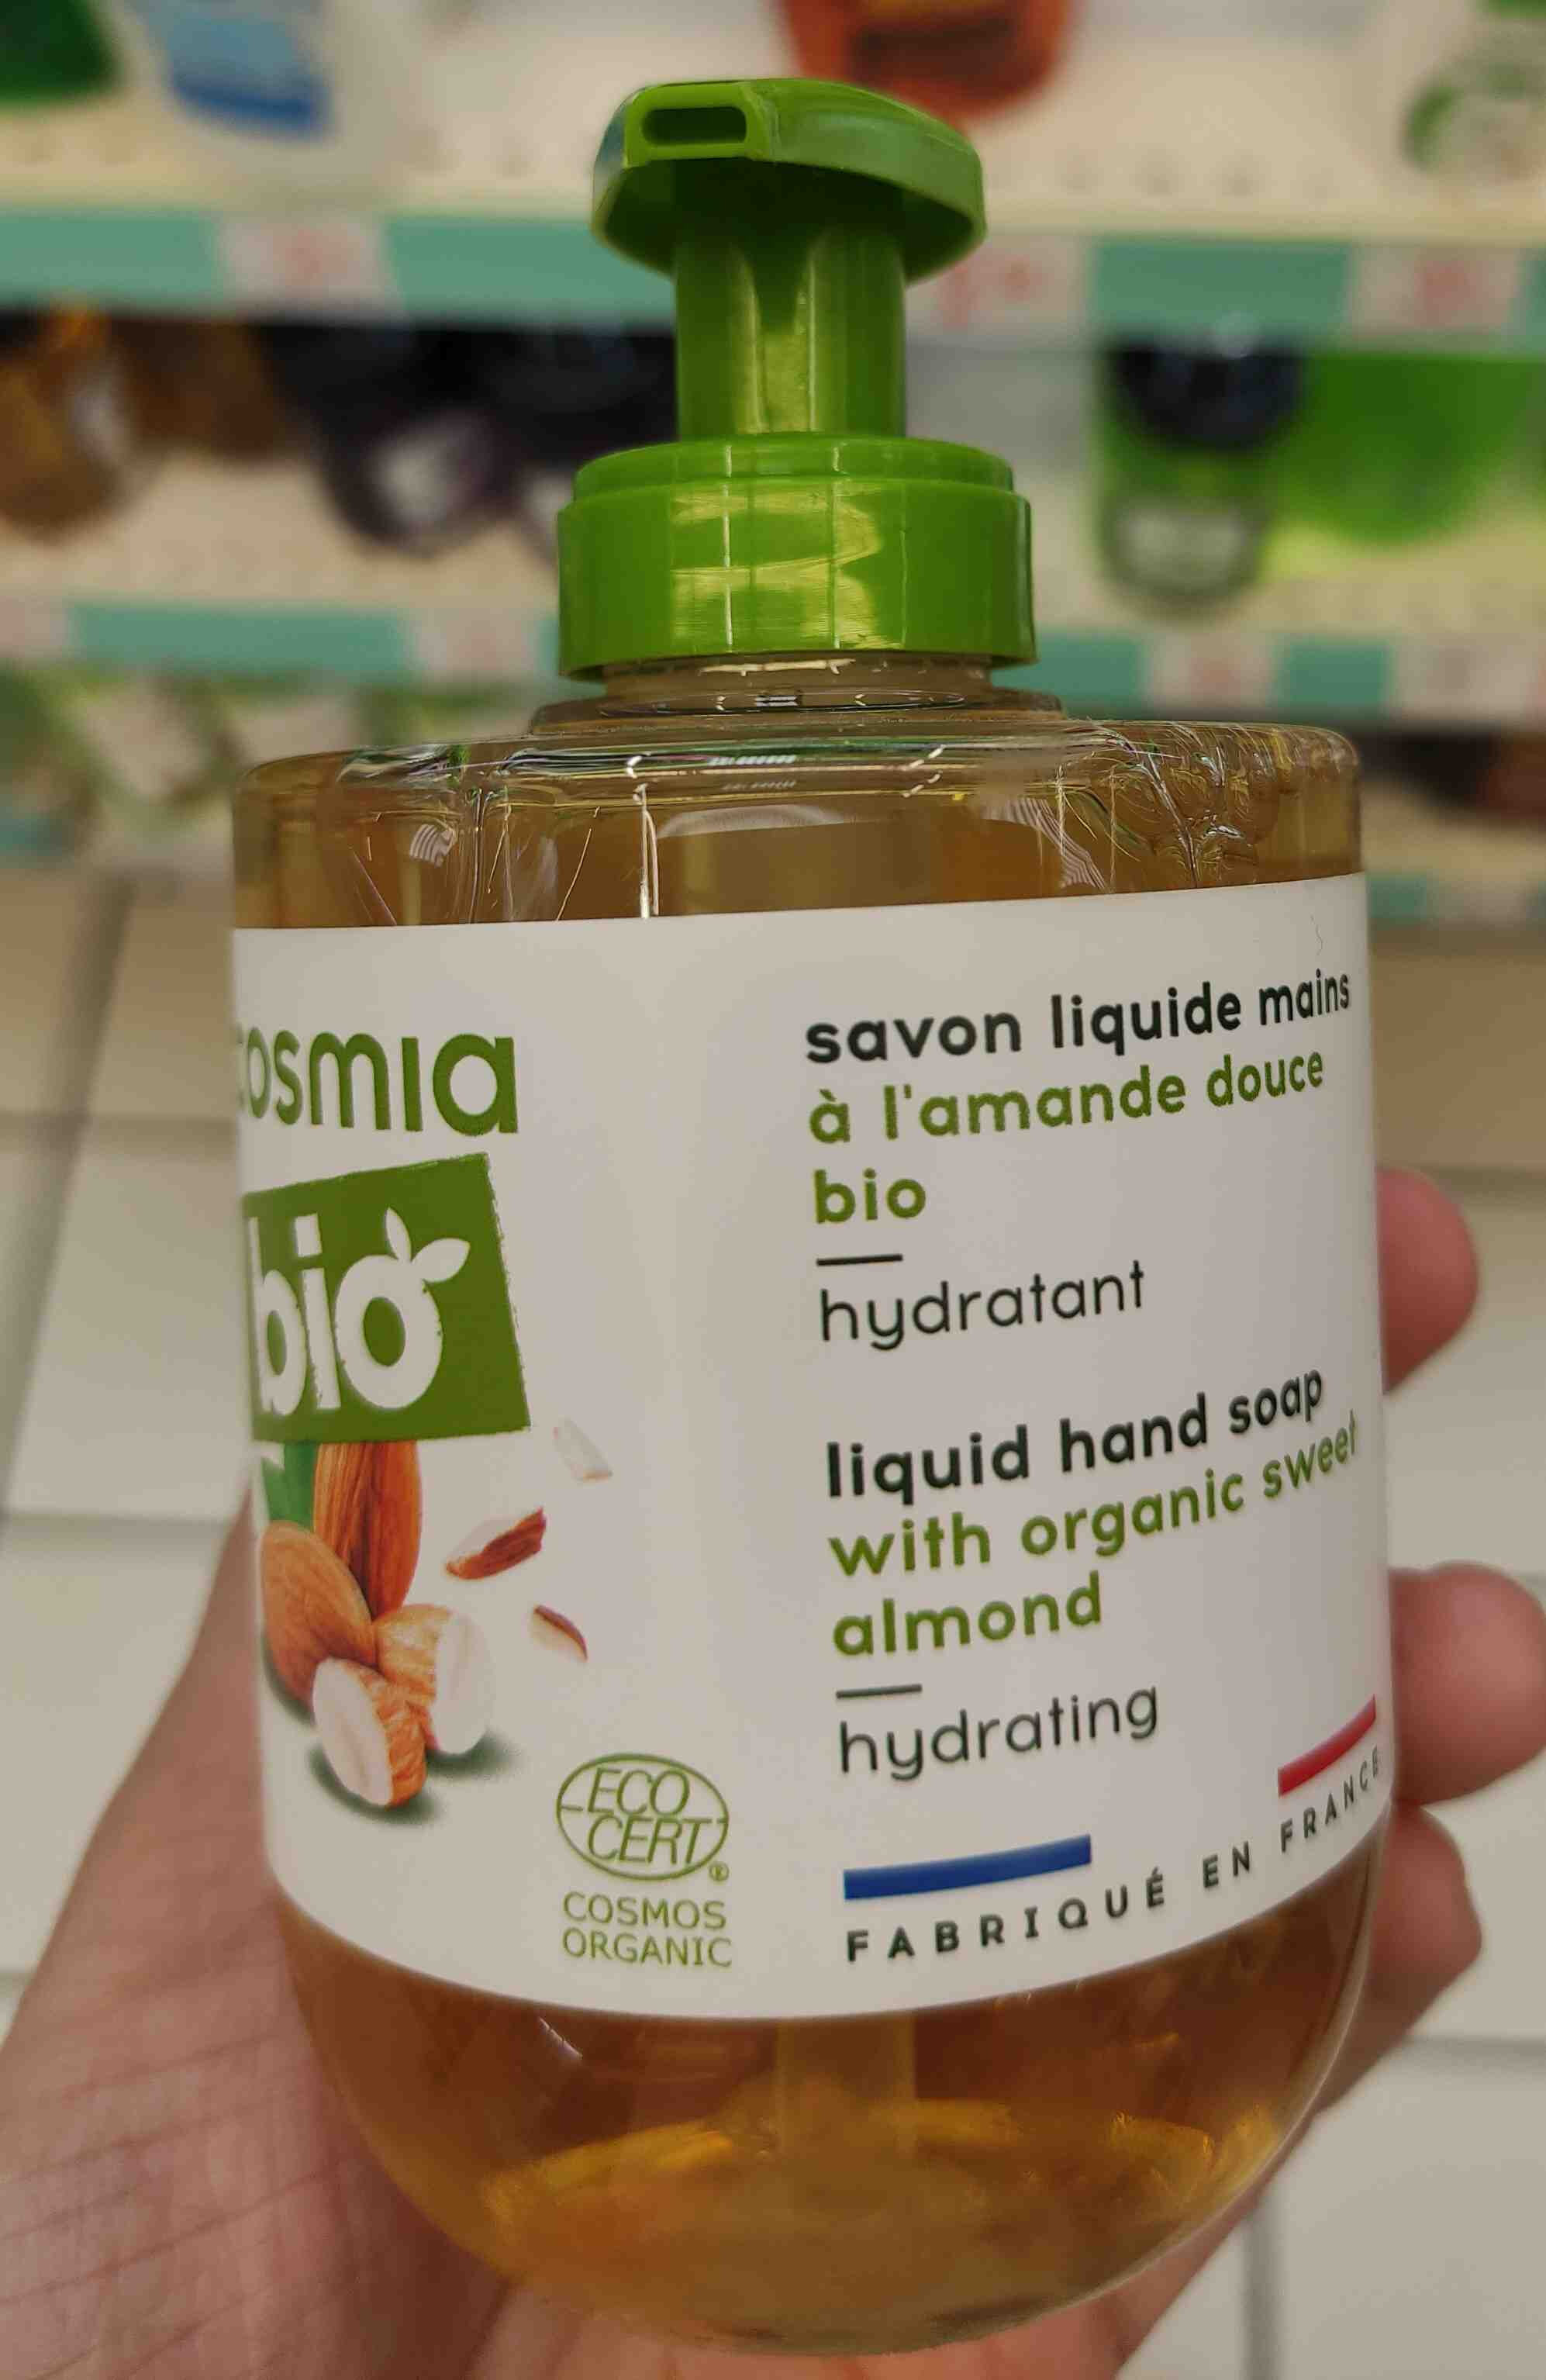 Bio savon liquide mains a l'amande douce bio - Product - en